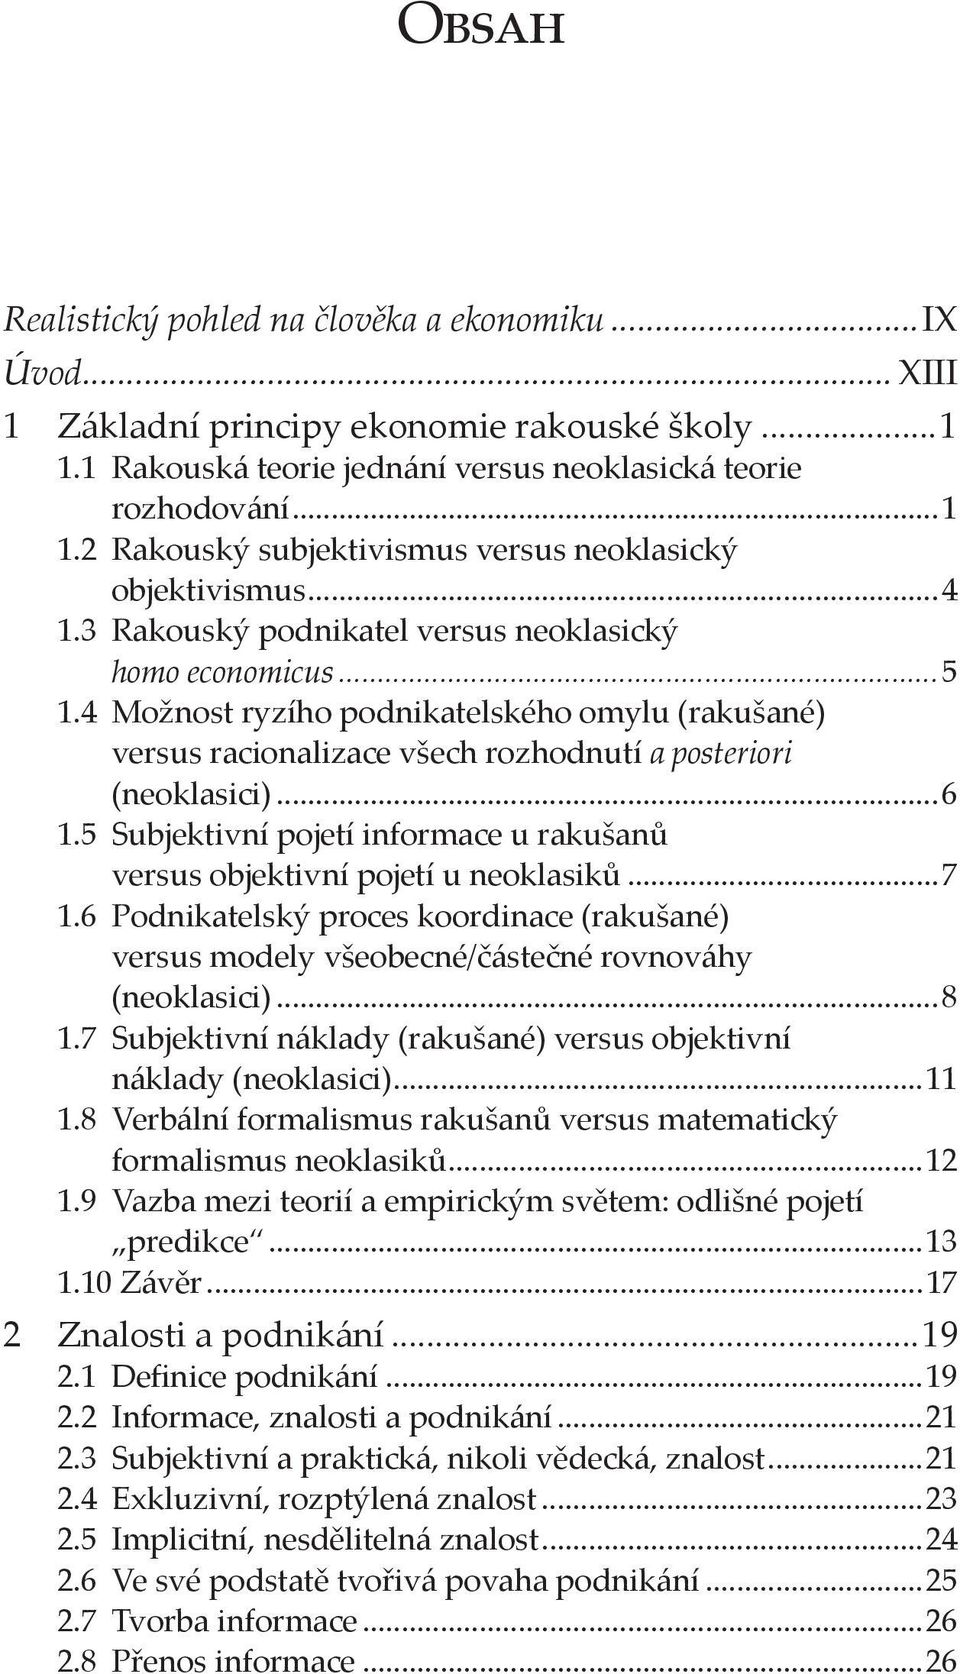 5 Subjektivní pojetí informace u rakušanů versus objektivní pojetí u neoklasiků...7 1.6 Podnikatelský proces koordinace (rakušané) versus modely všeobecné/částečné rovnováhy (neoklasici)...8 1.